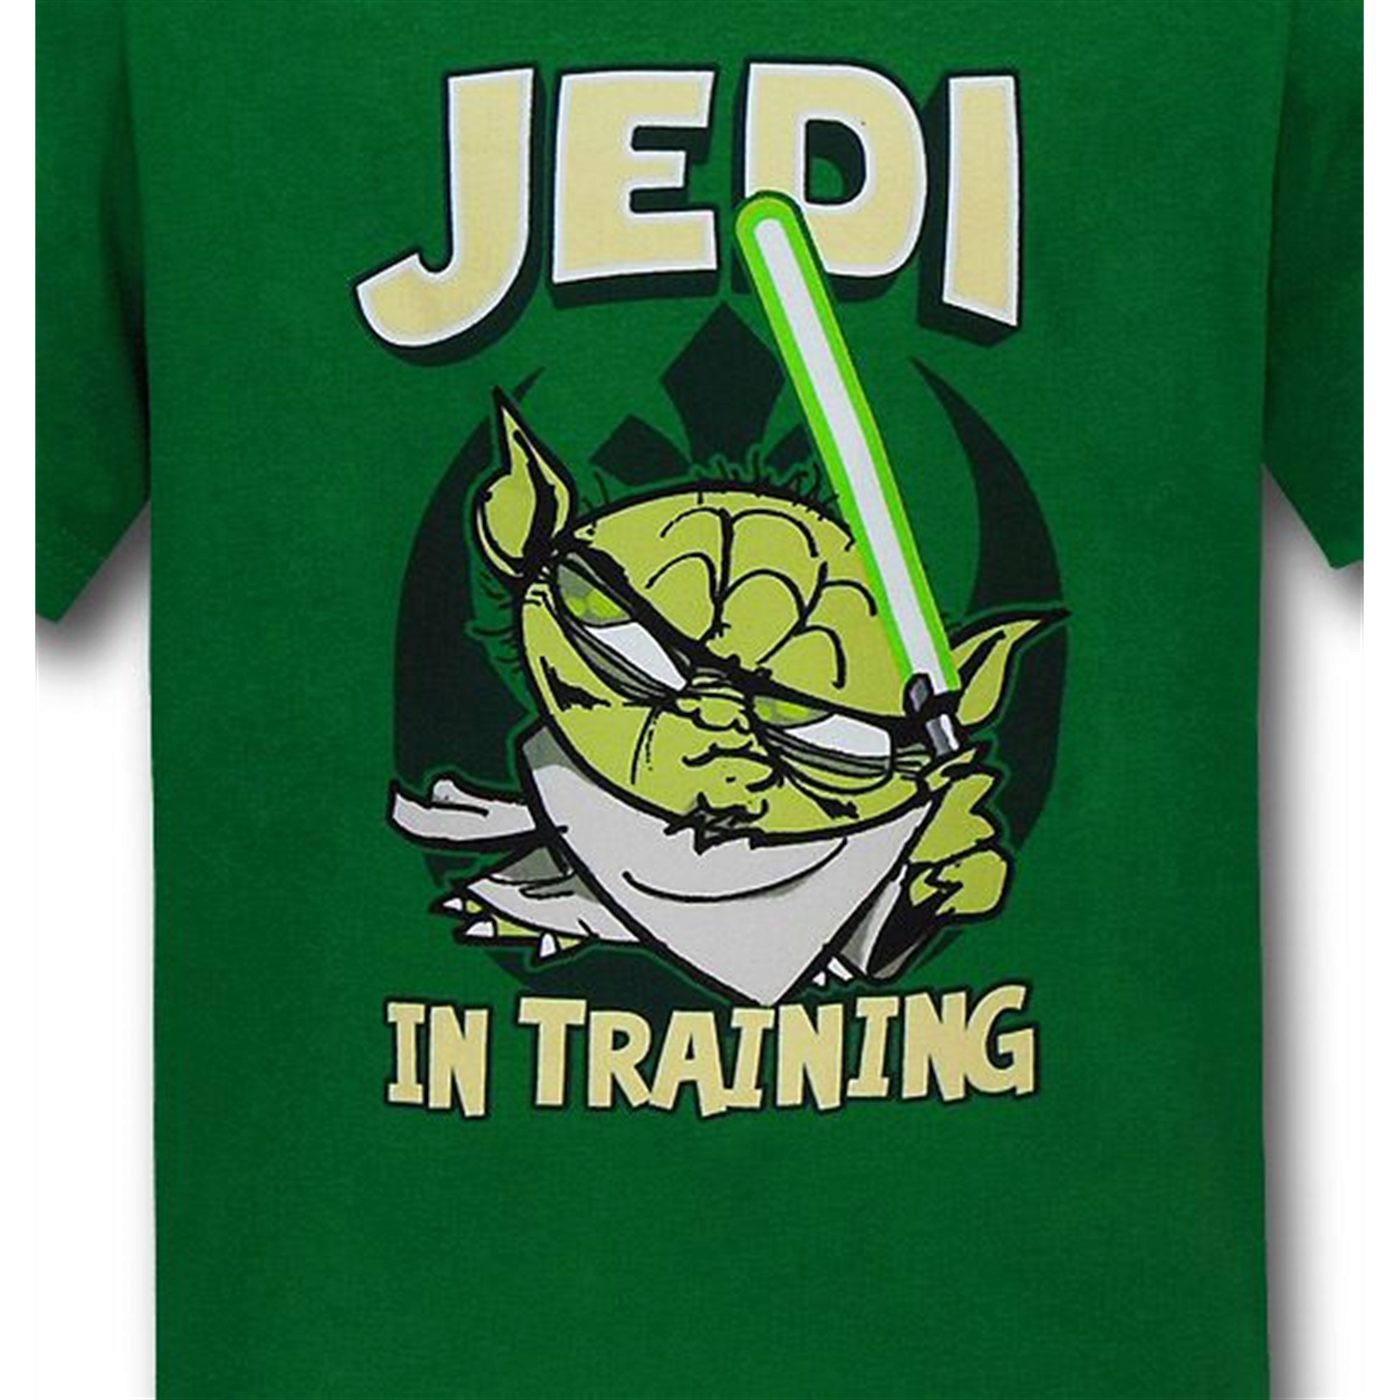 Star Wars Yoda Jedi In Training Kids Green T-Shirt